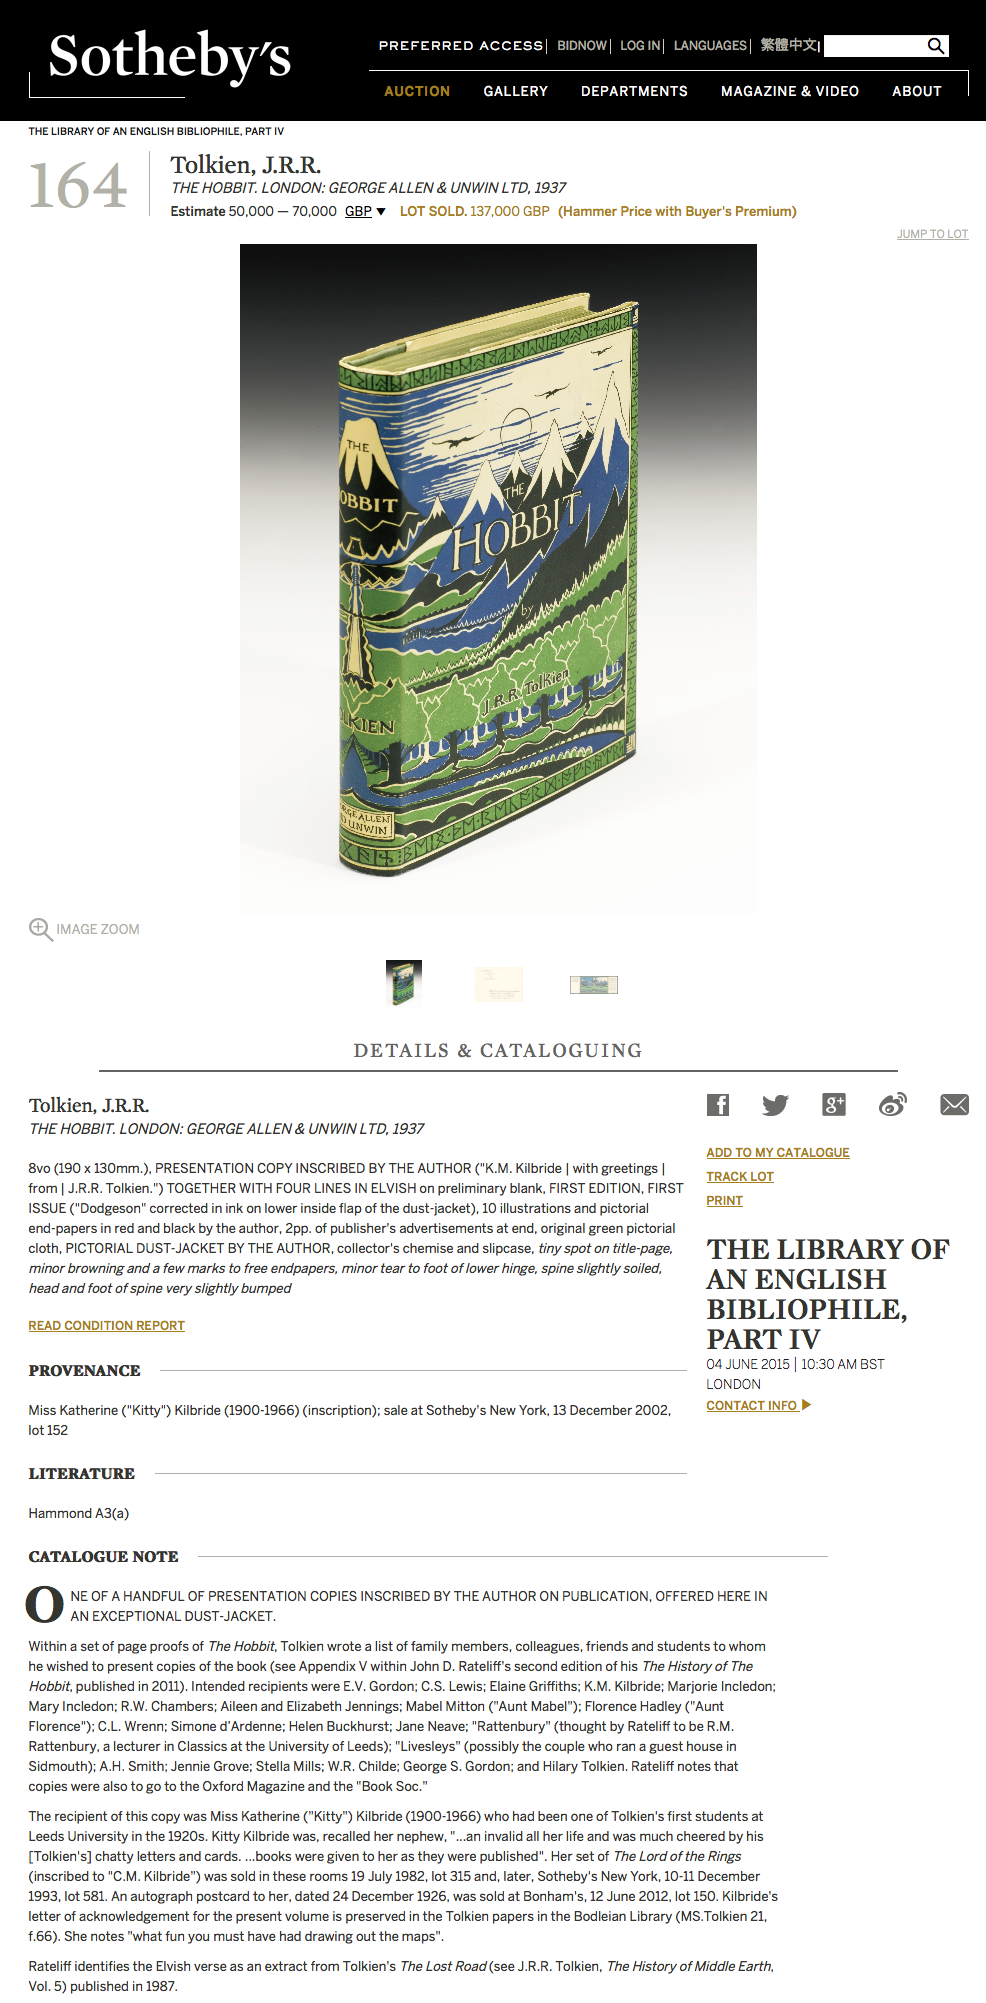 J.R.R. Tolkiens The Hobbit zum Rekordpreis bei Sotheby's versteigert